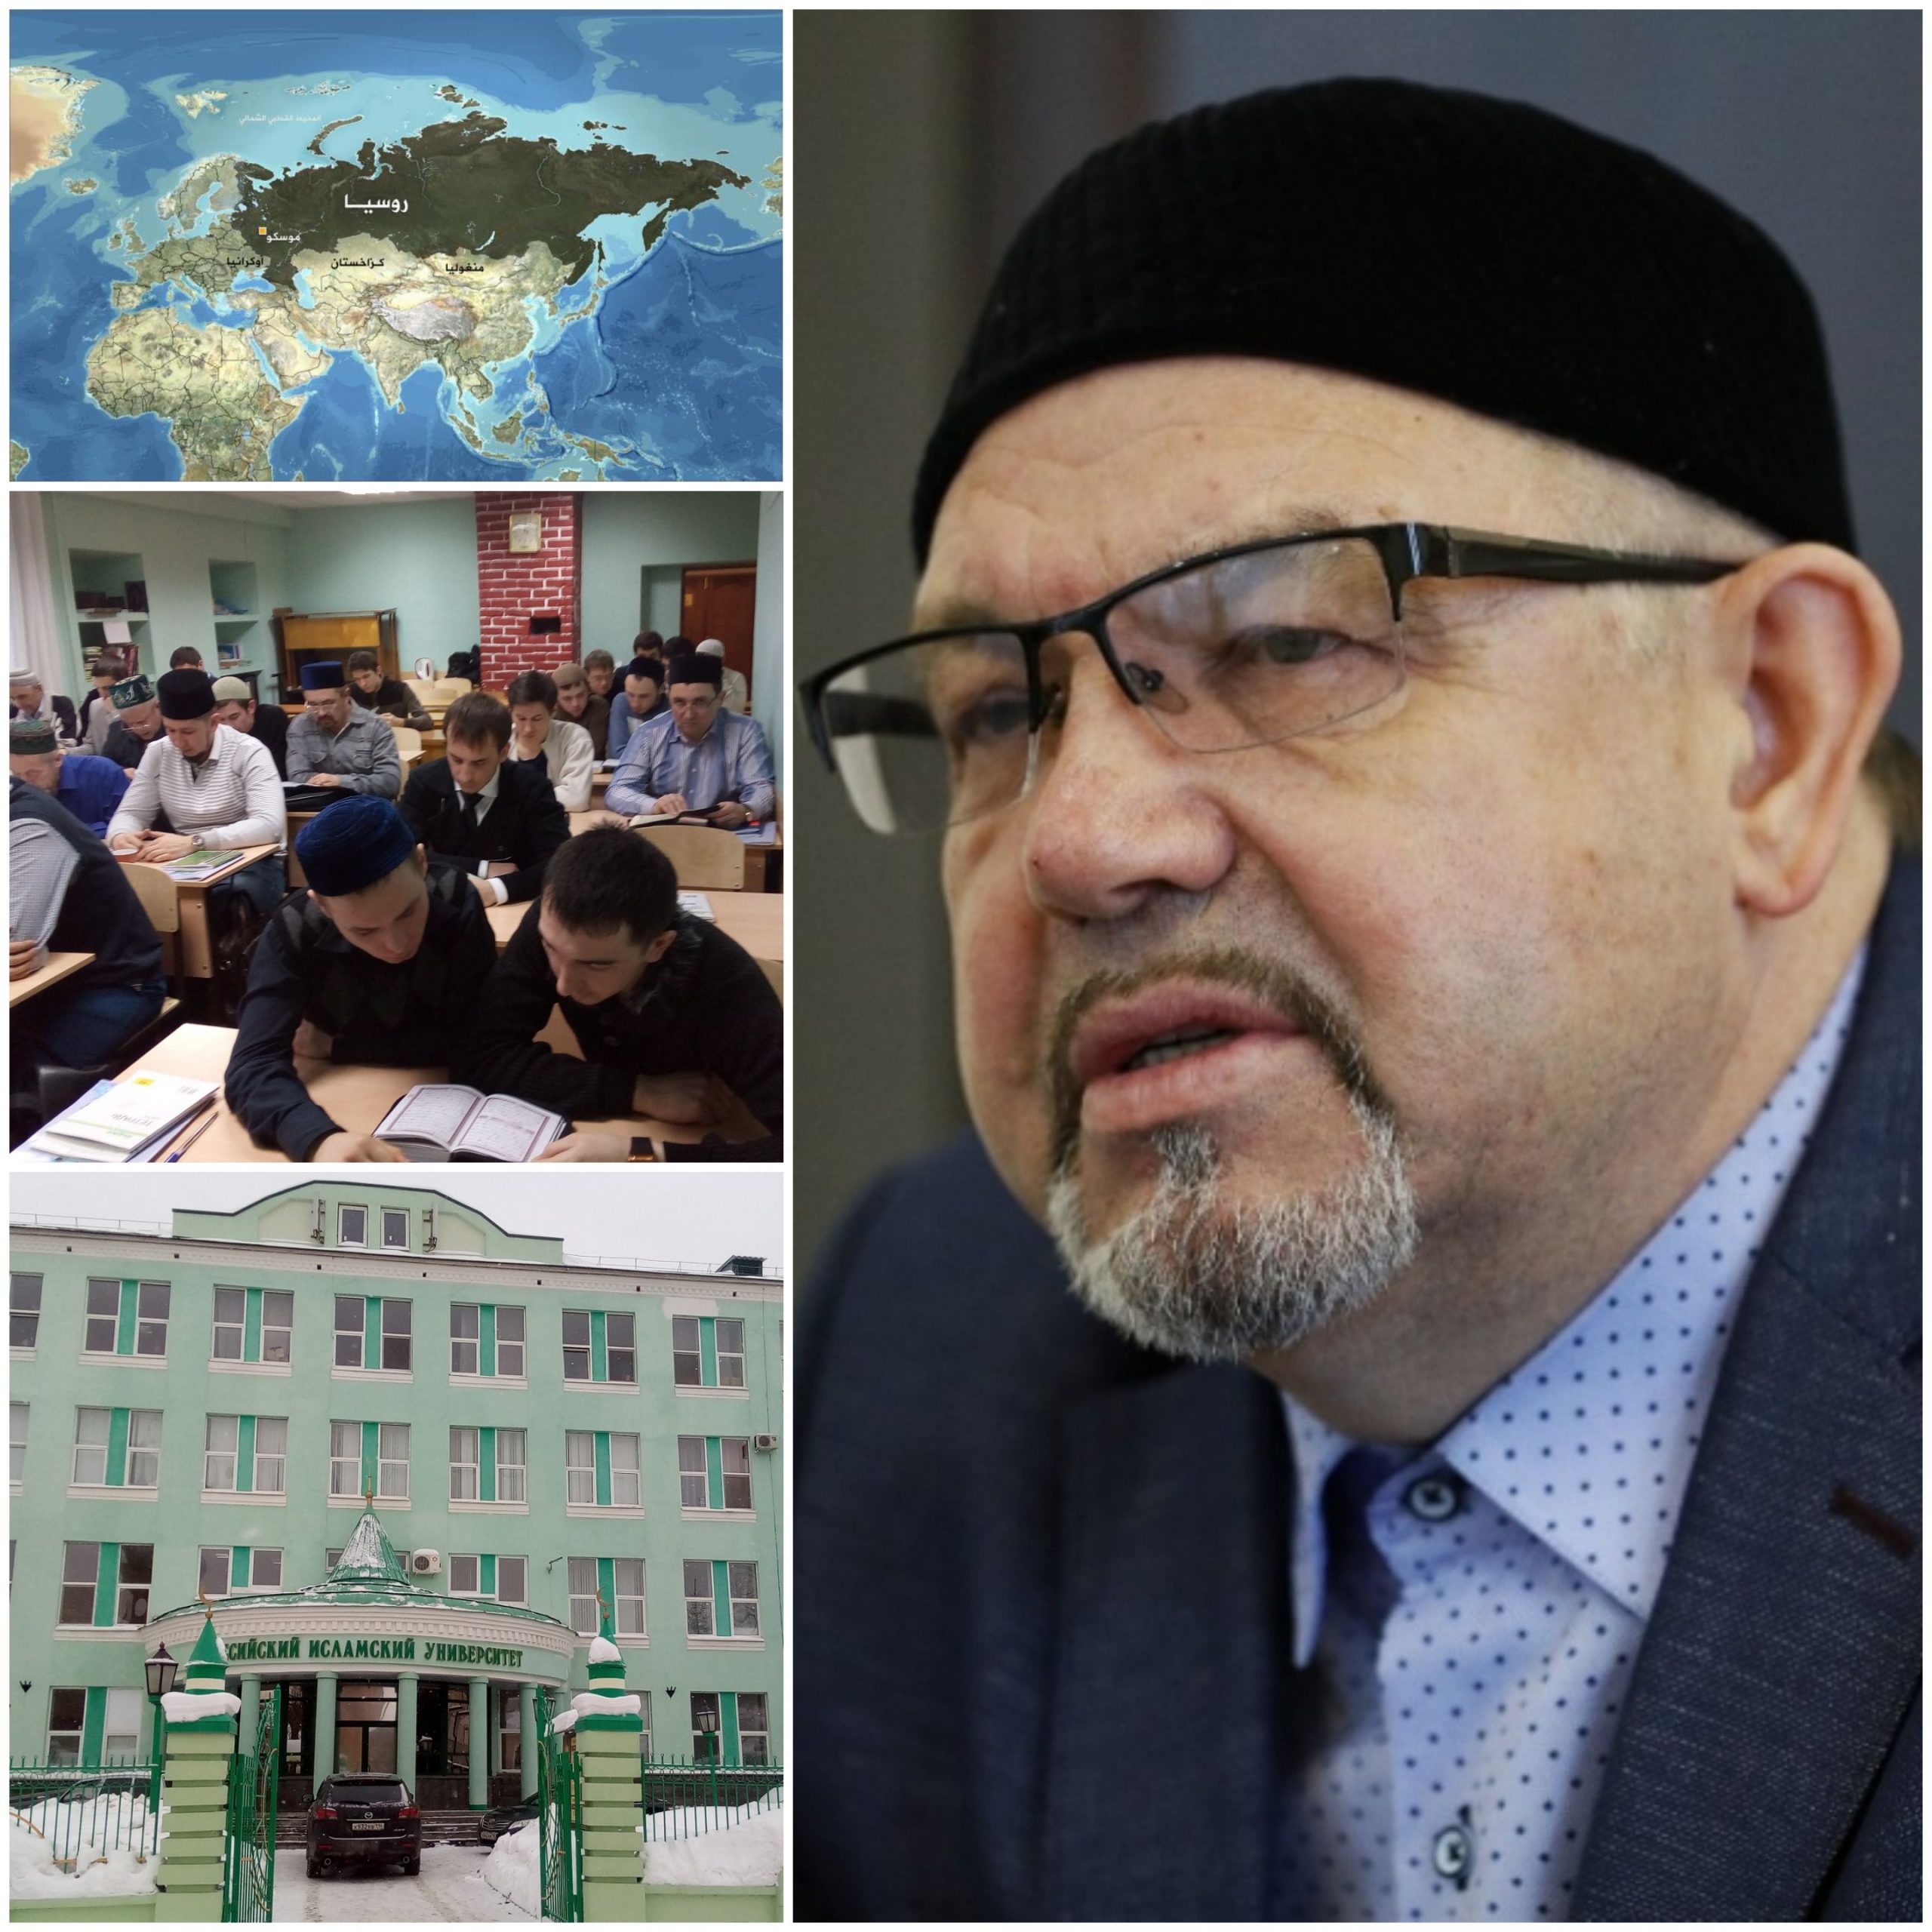 رئيس "المعهد الإسلامي الروسي" يحدّد عدد المؤسسات التعليمية الإسلامية العاملة في روسيا